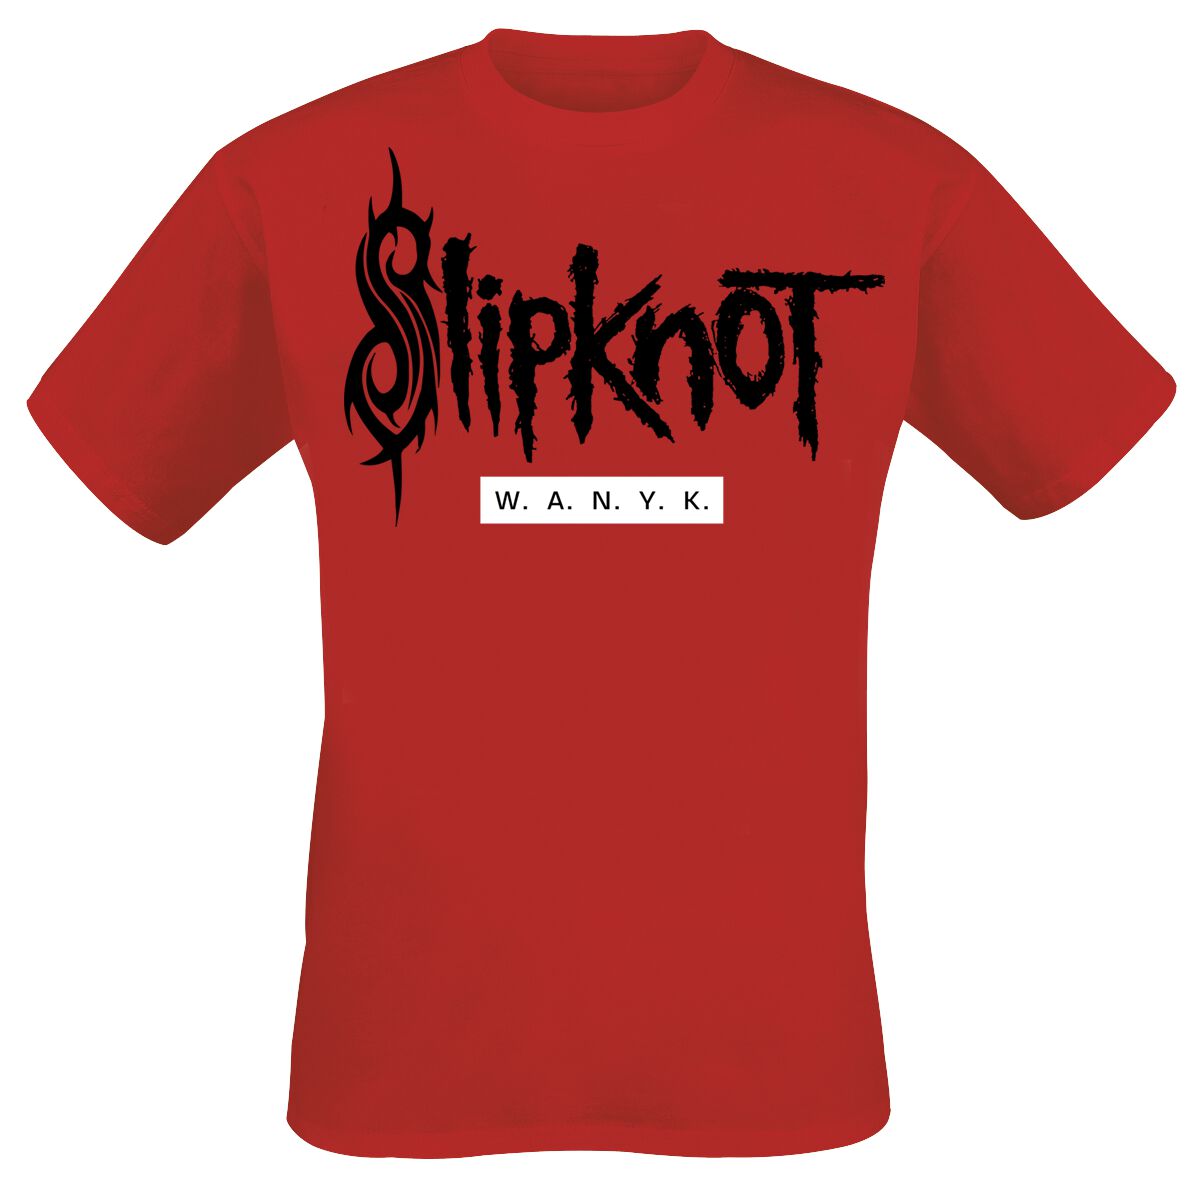 Slipknot T-Shirt - We Are Not Your Kind - M bis 5XL - für Männer - Größe 4XL - rot  - EMP exklusives Merchandise!